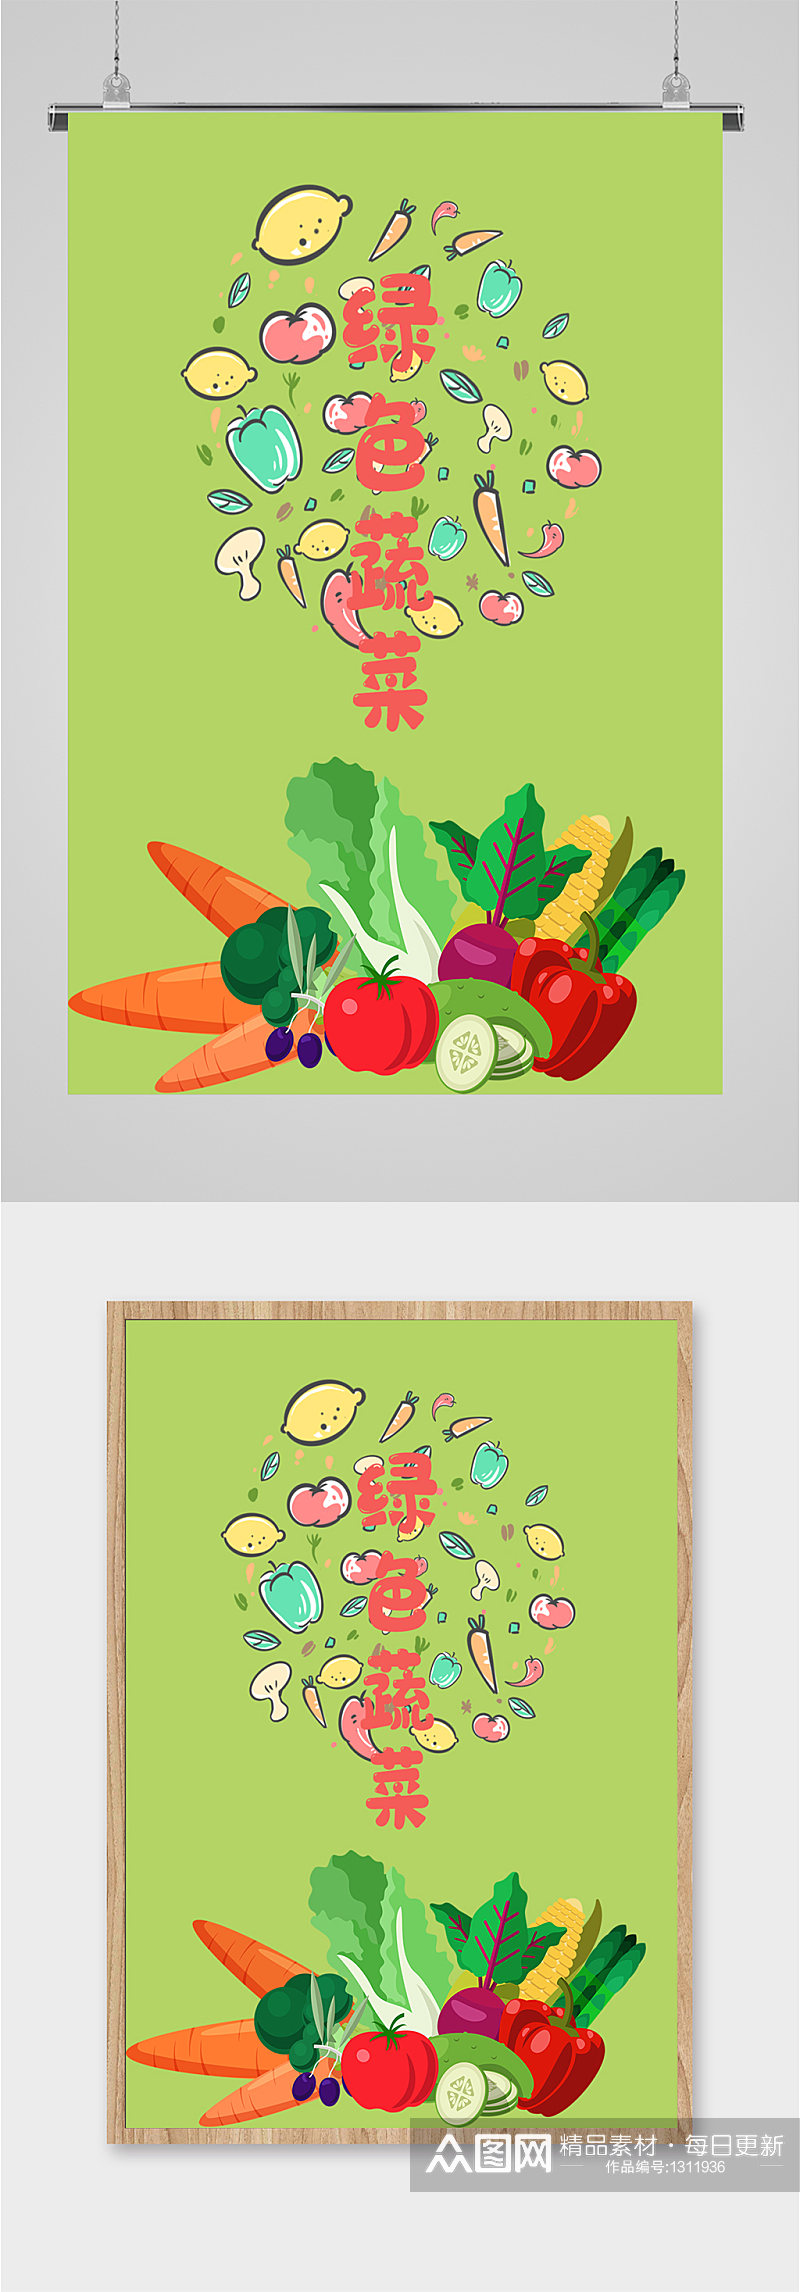 绿色蔬菜宣传海报素材